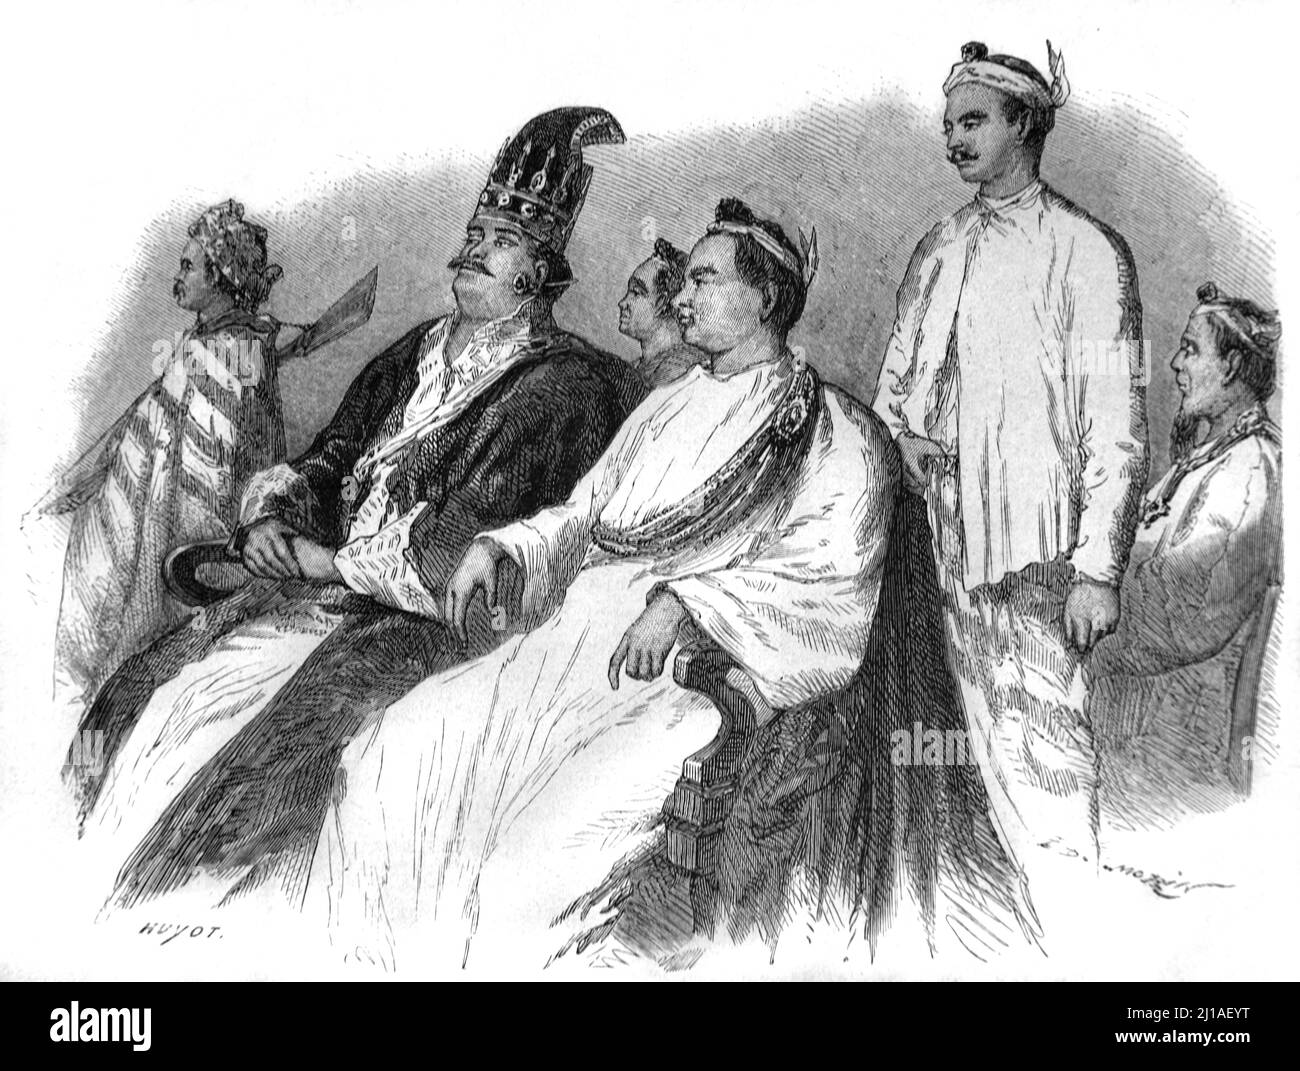 Aristócratas birmanos o aristocracia que visten ropa o traje tradicional birmano Birmania Myanmar. Ilustración o grabado 1860. Foto de stock